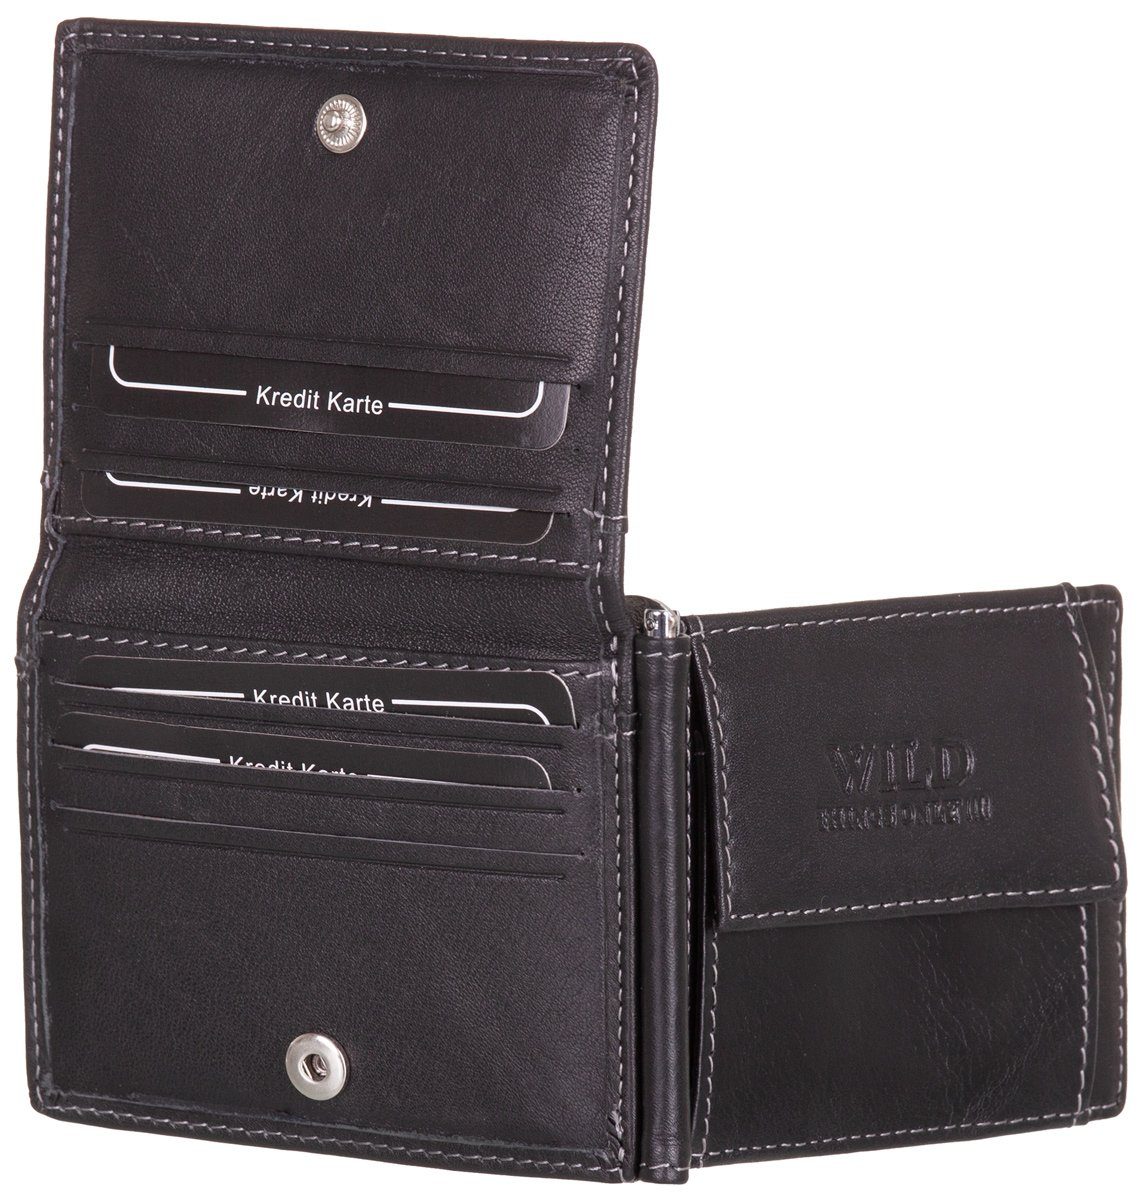 BAG STREET Geldbörse, schwarz Leder RFID-Schutz Münzfach mit Geldclip Geldbeutel Echt Portemonnaie Geldklammer